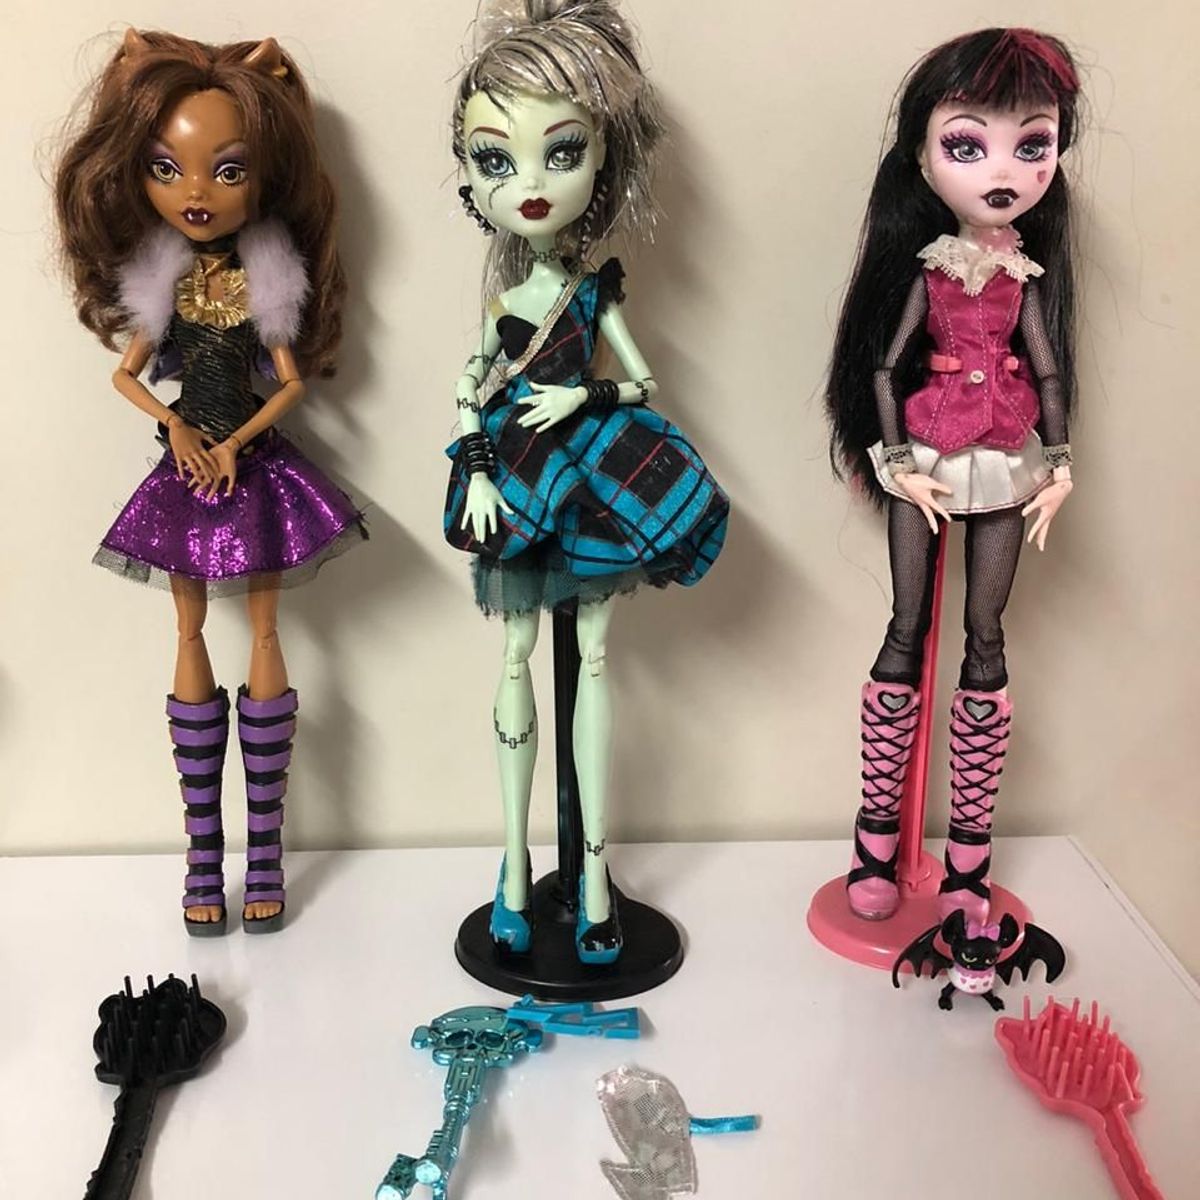 Bonecas Monster High: Conheça todas aqui na Tricae